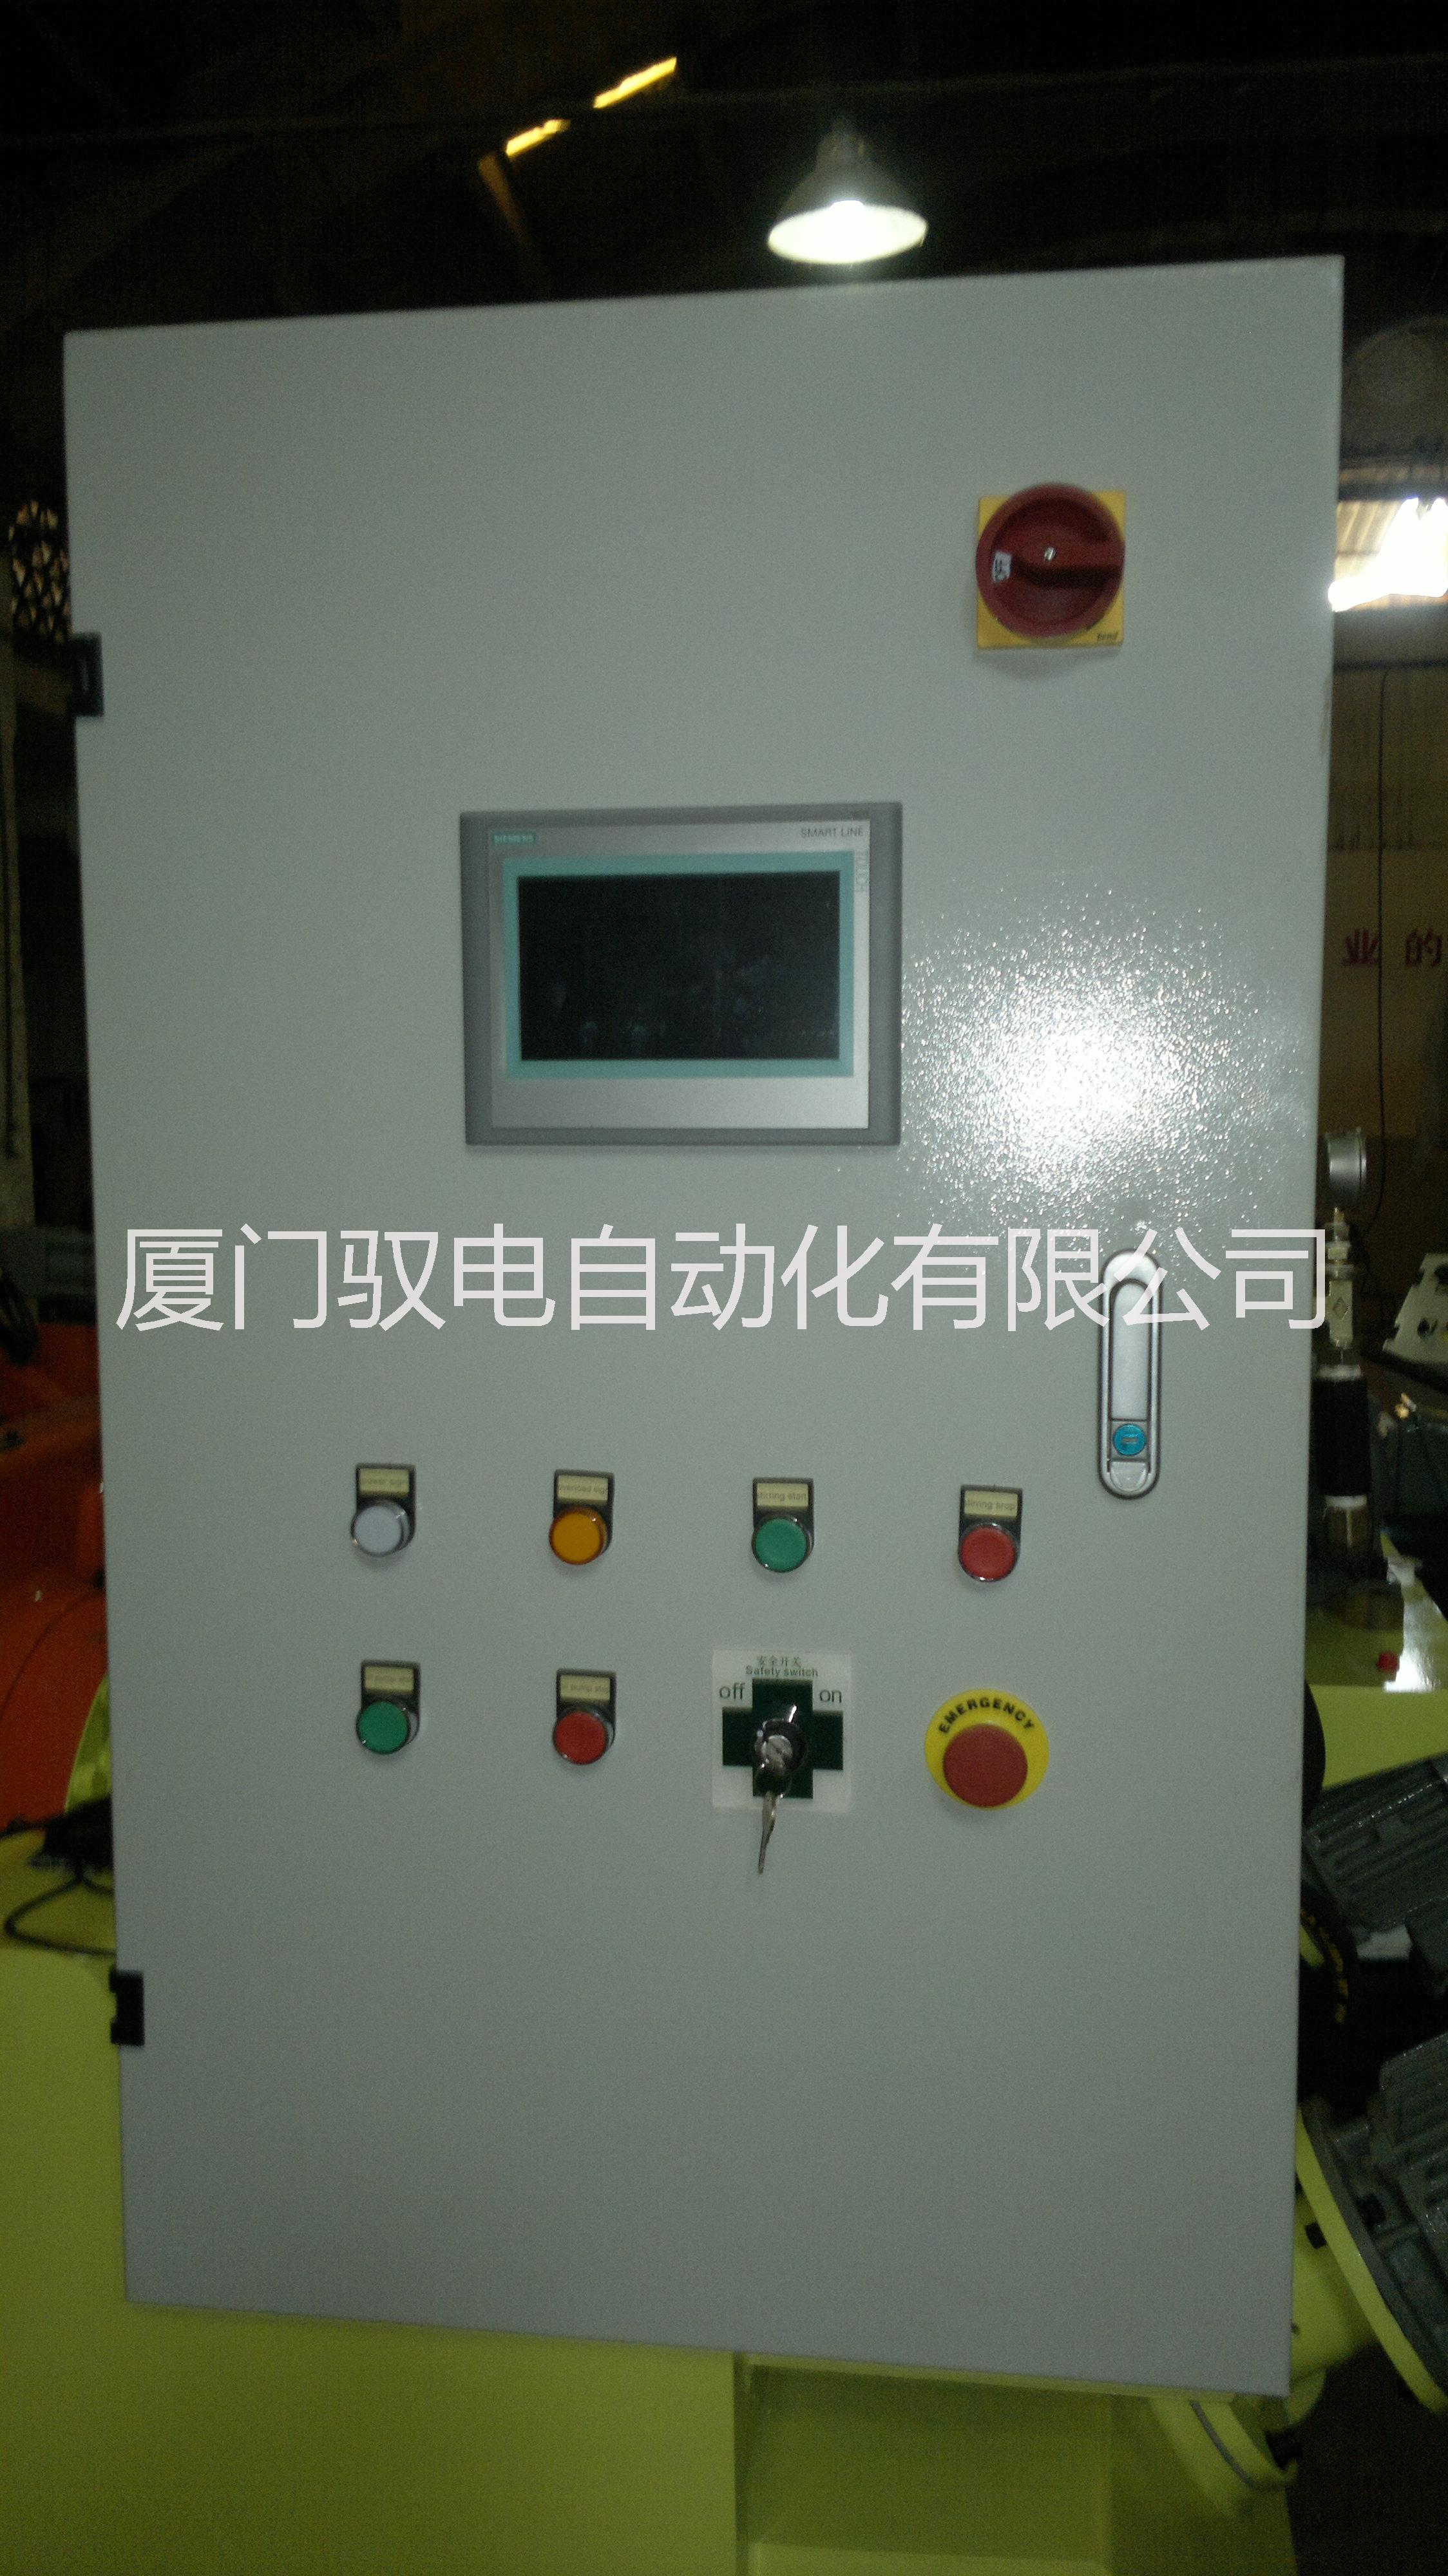 供应用于控制铸造的铸造机电控箱 厦门铸造机电控箱厂家